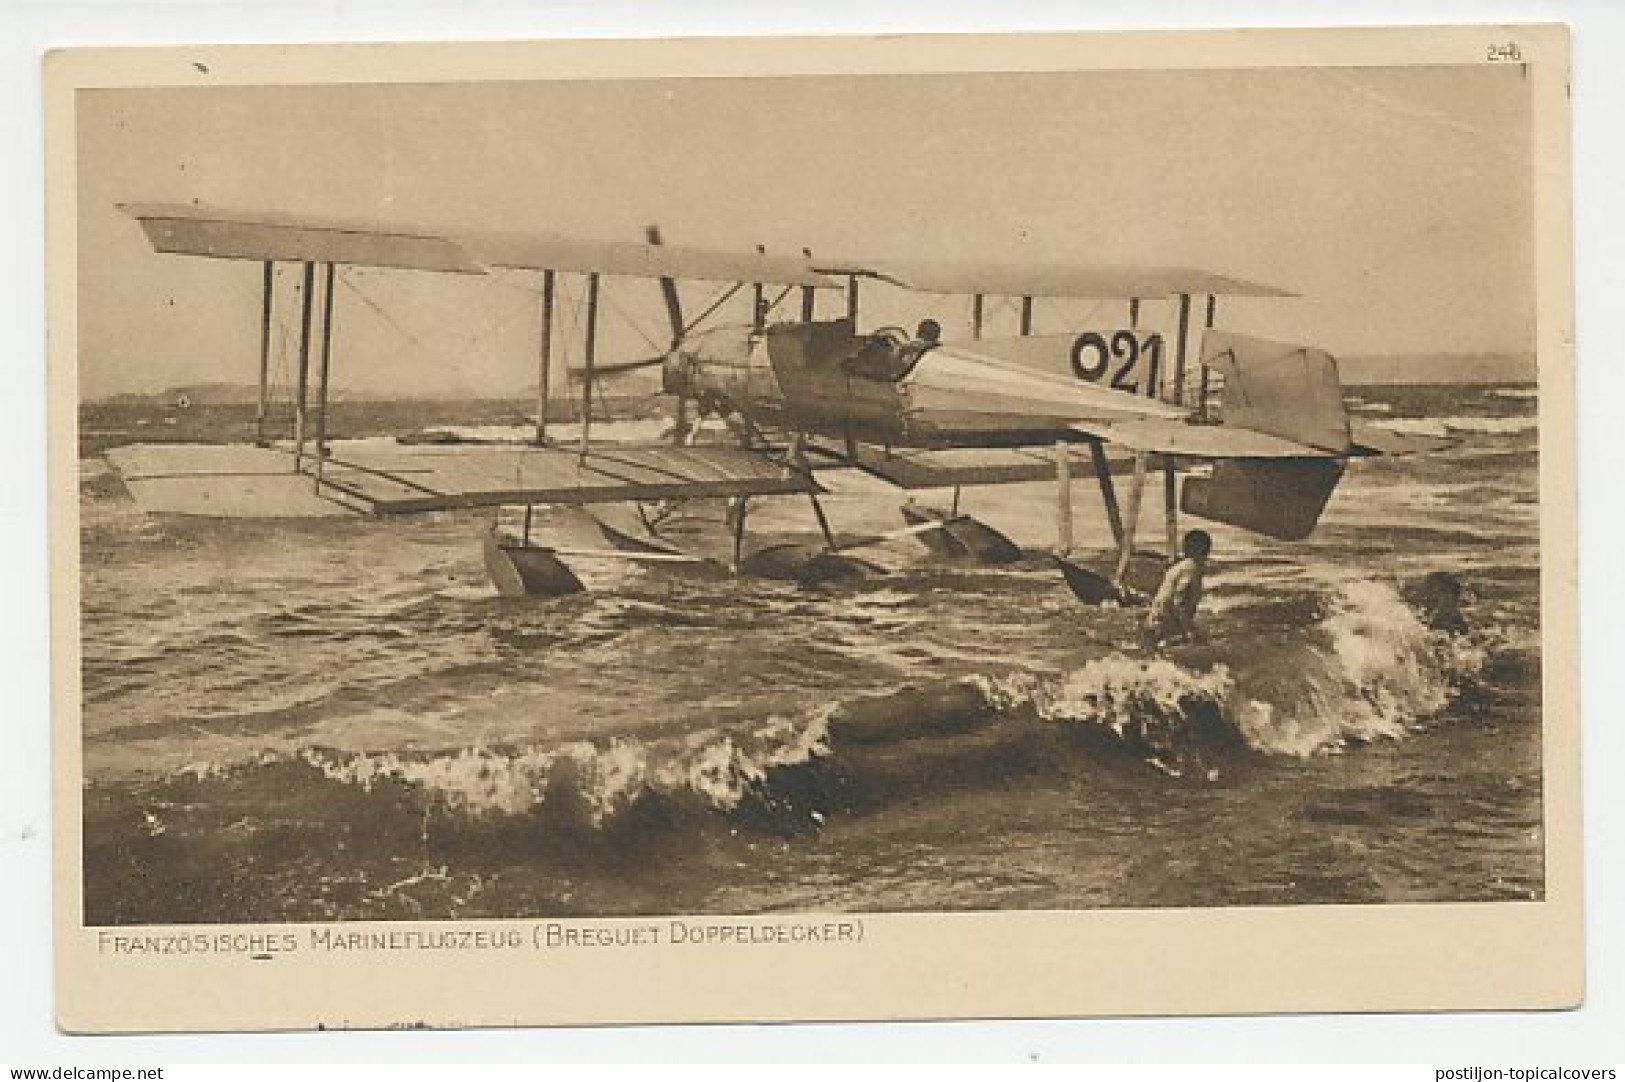 Fieldpost Postcard Germany 1915 French Naval Plane - Breguet Biplane - WWI - WW1